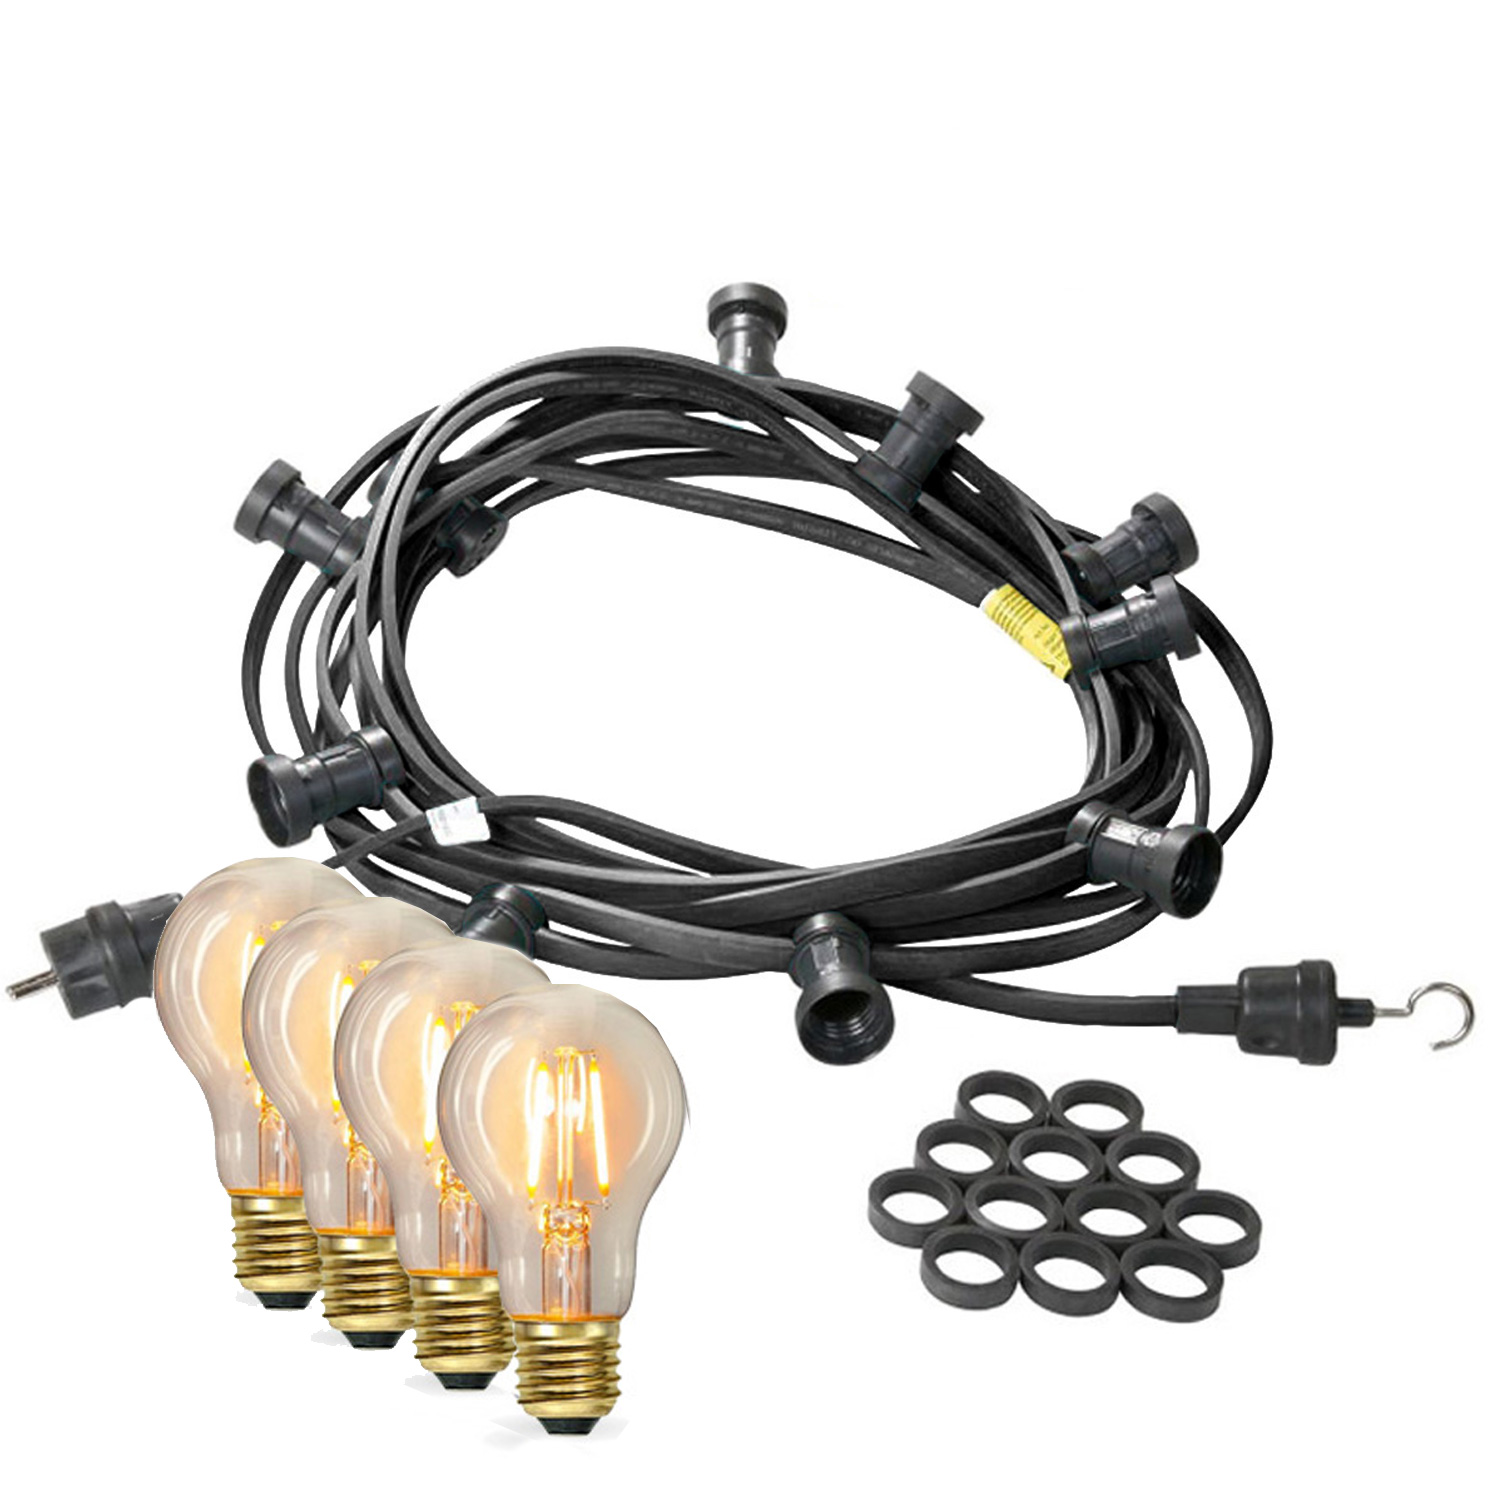 Illu-/Partylichterkette 40m - Außenlichterkette - Made in Germany - 40 x Edison LED Filamentlampen